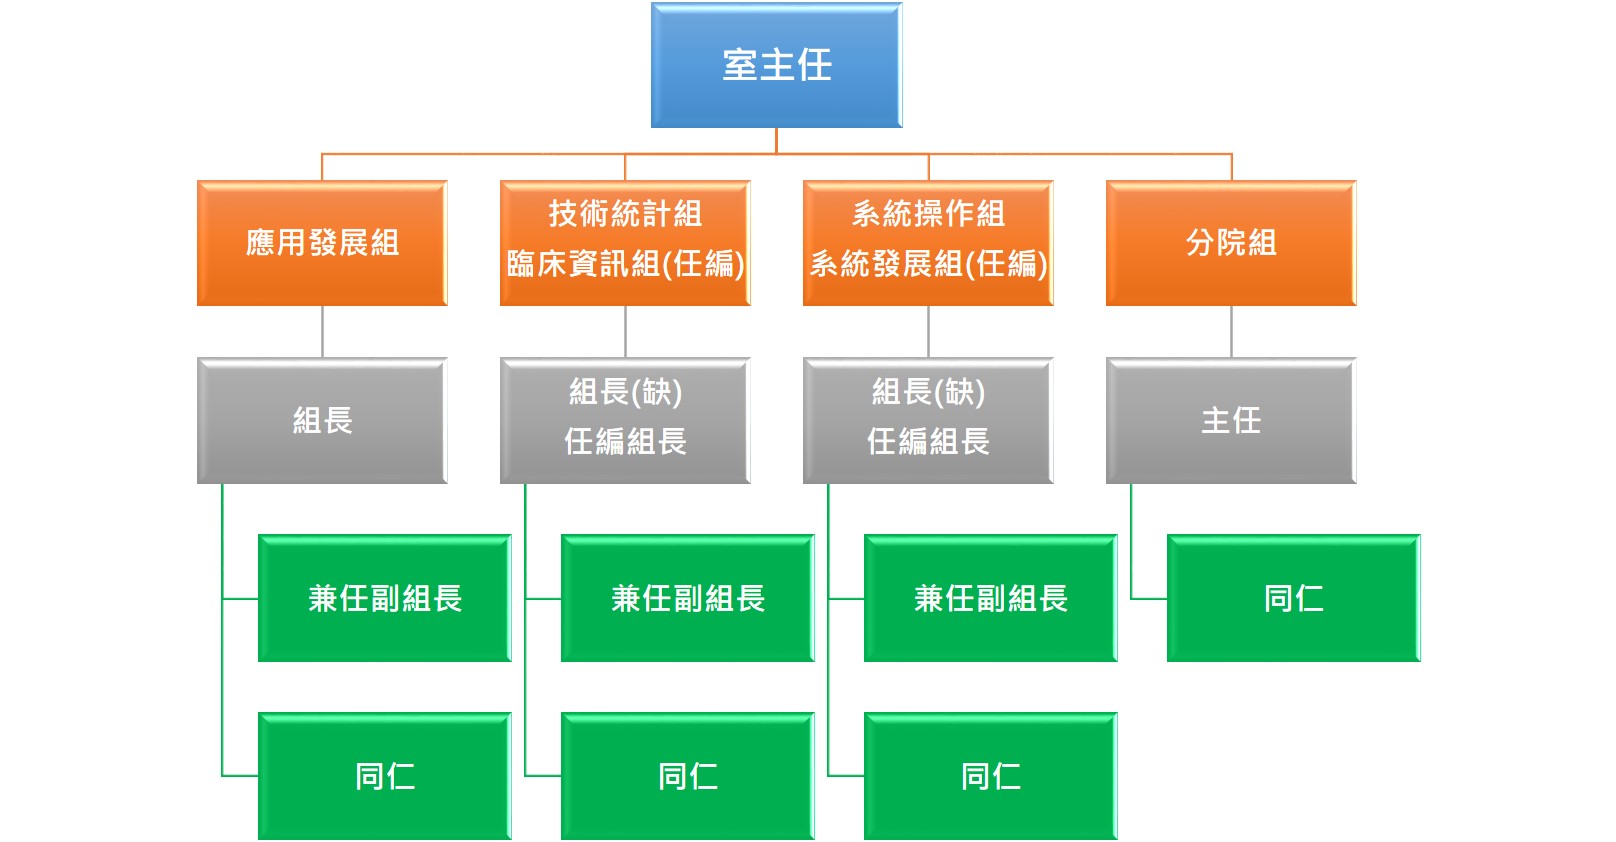 資訊室組織架構圖